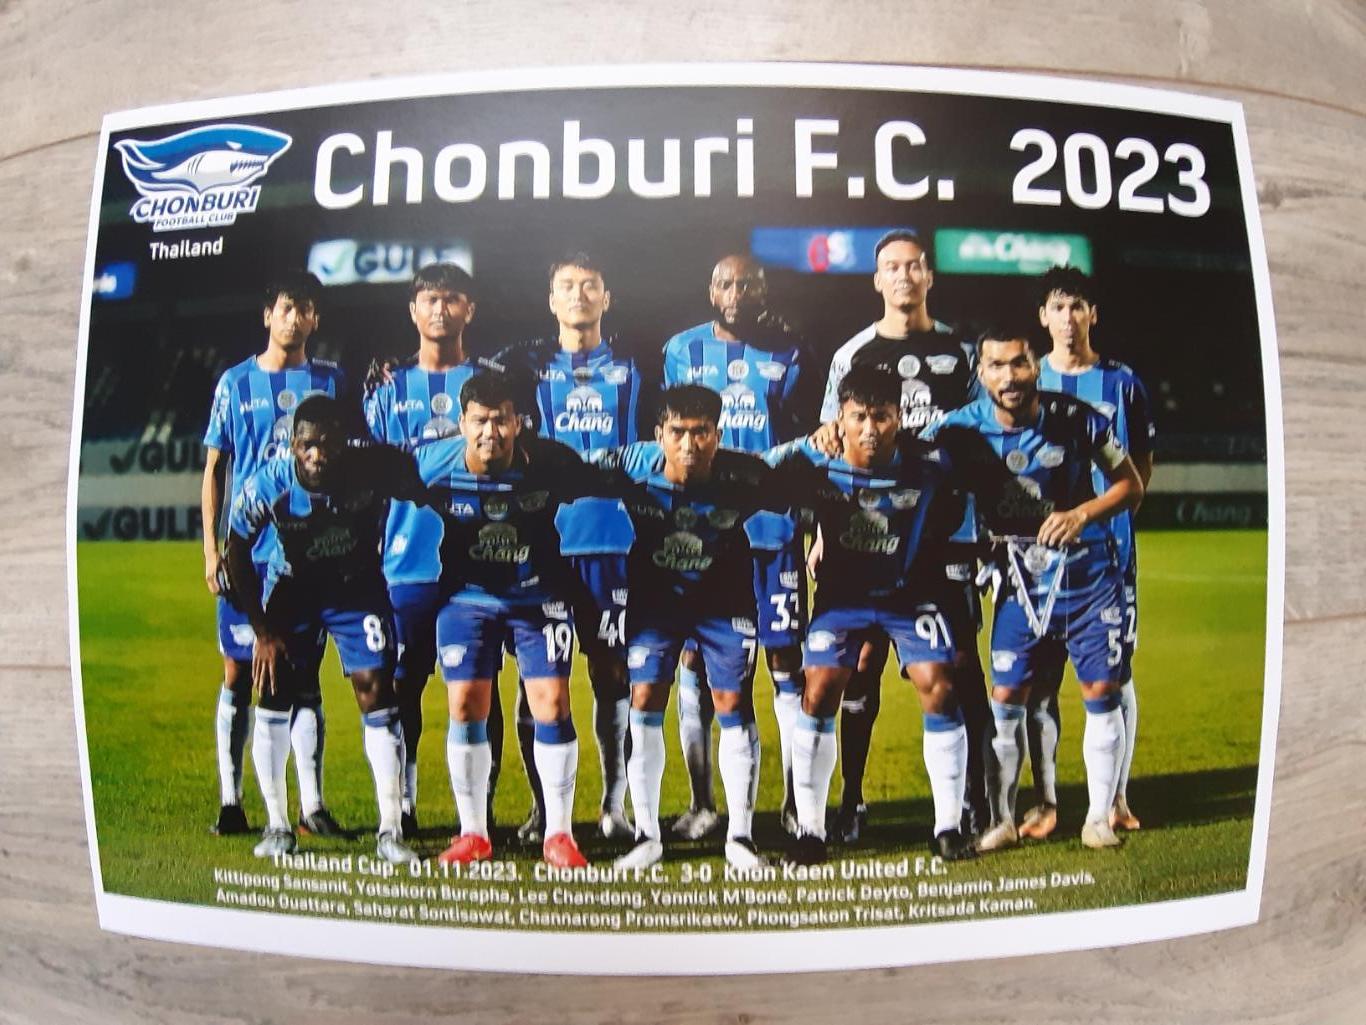 Chonburi F.C. 2023 (Thailand)